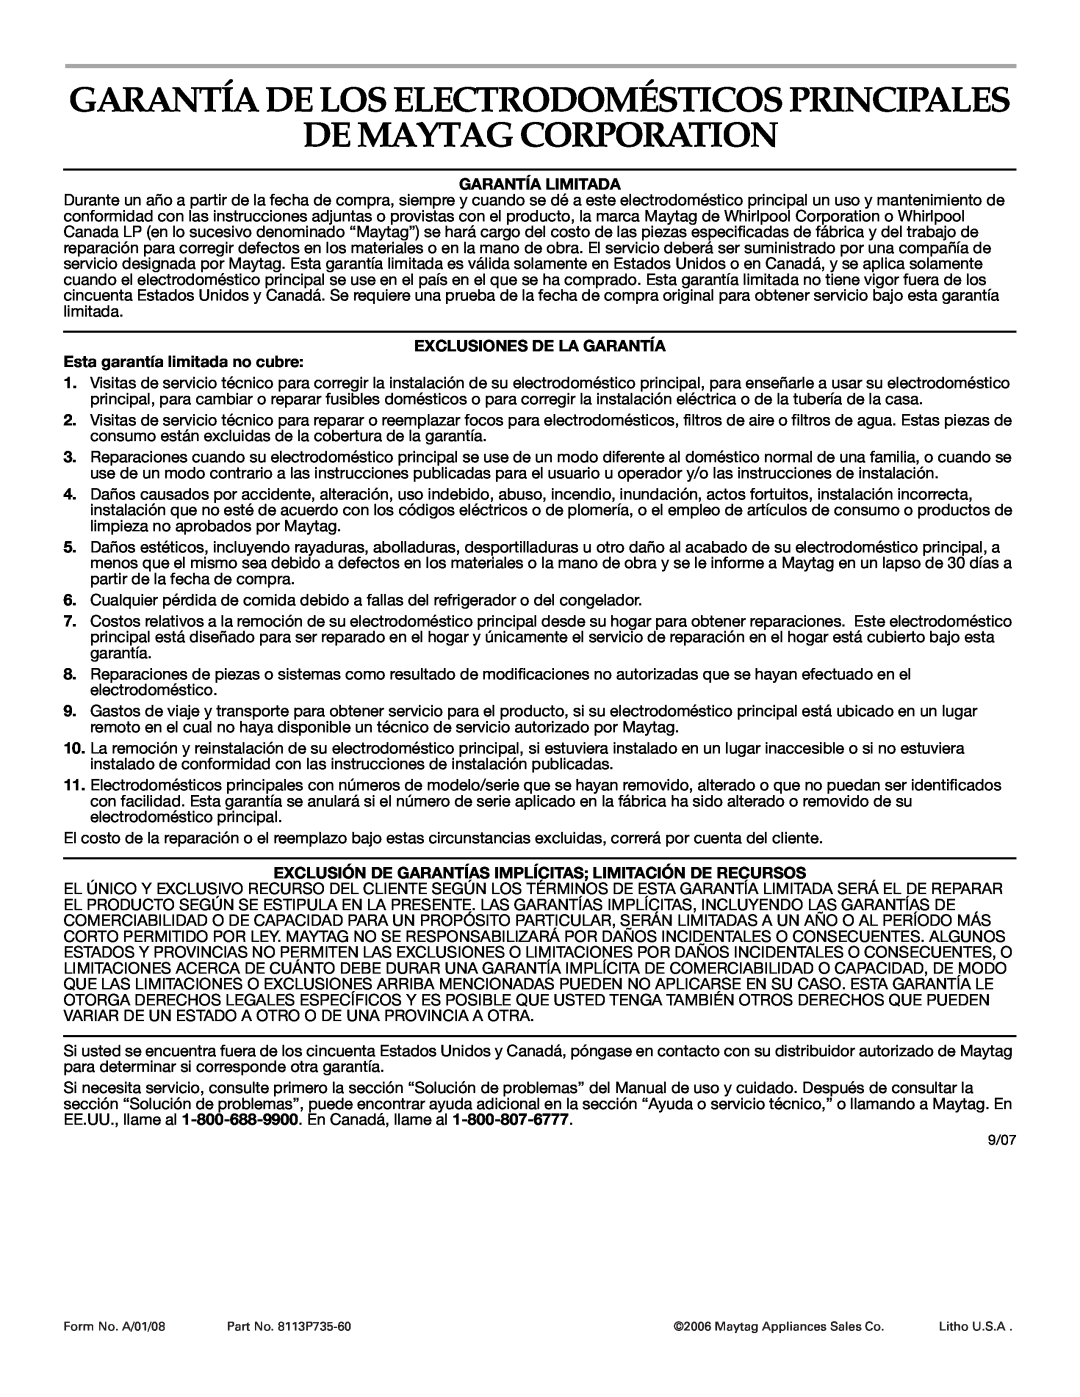 Maytag MGR5775QDW manual De Maytag Corporation, Garantía De Los Electrodomésticos Principales, Garantía Limitada 